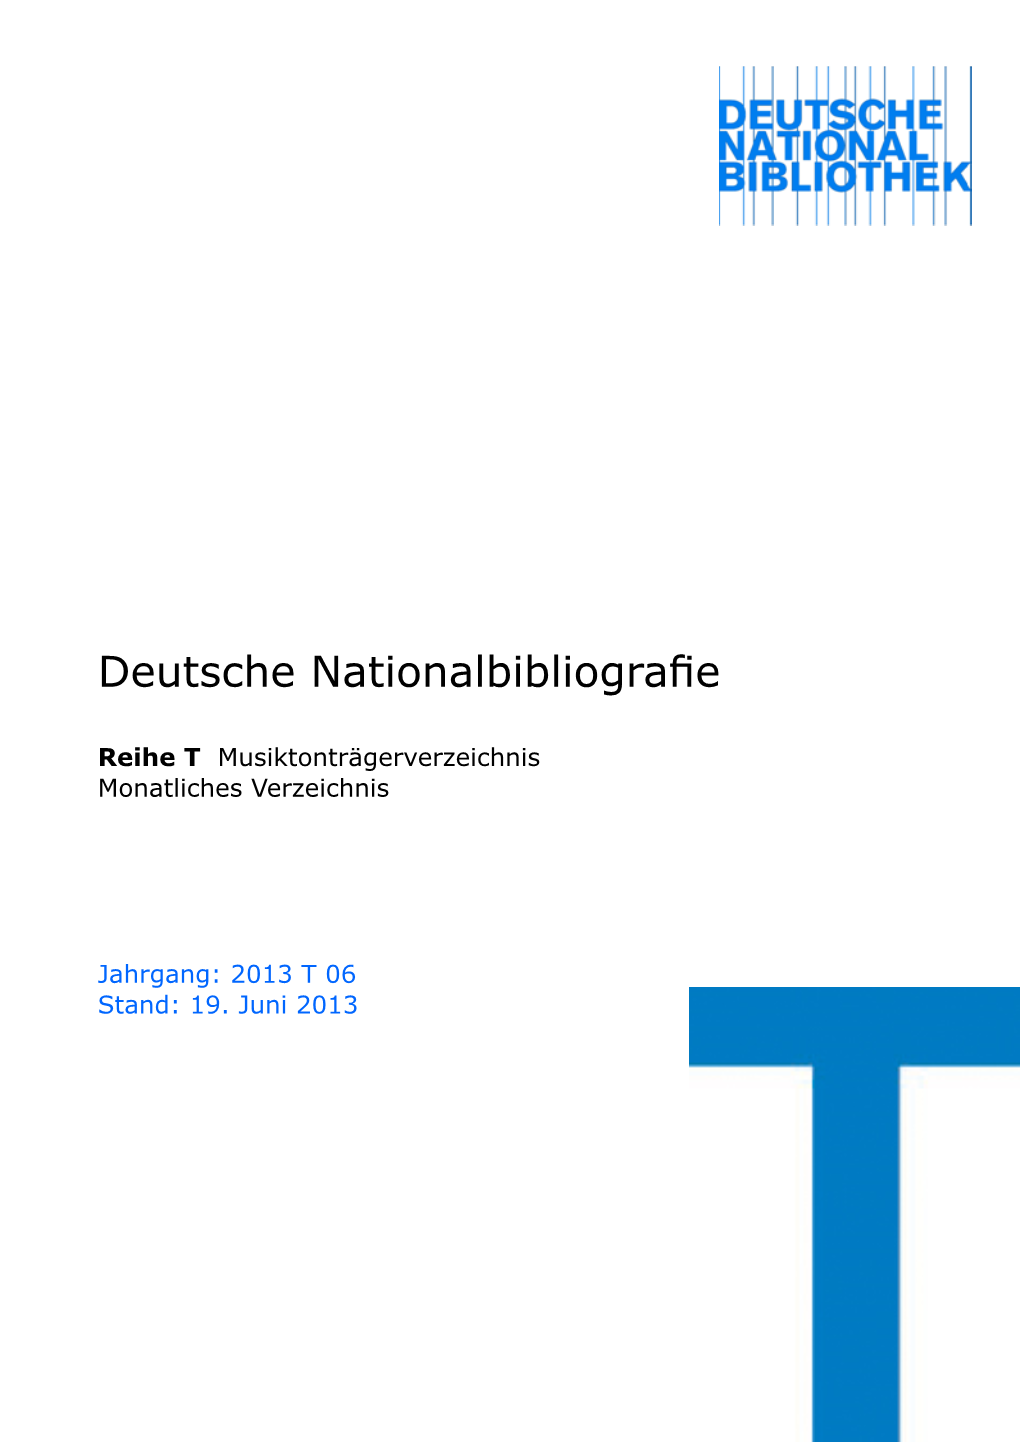 Deutsche Nationalbibliografie 2013 T 06